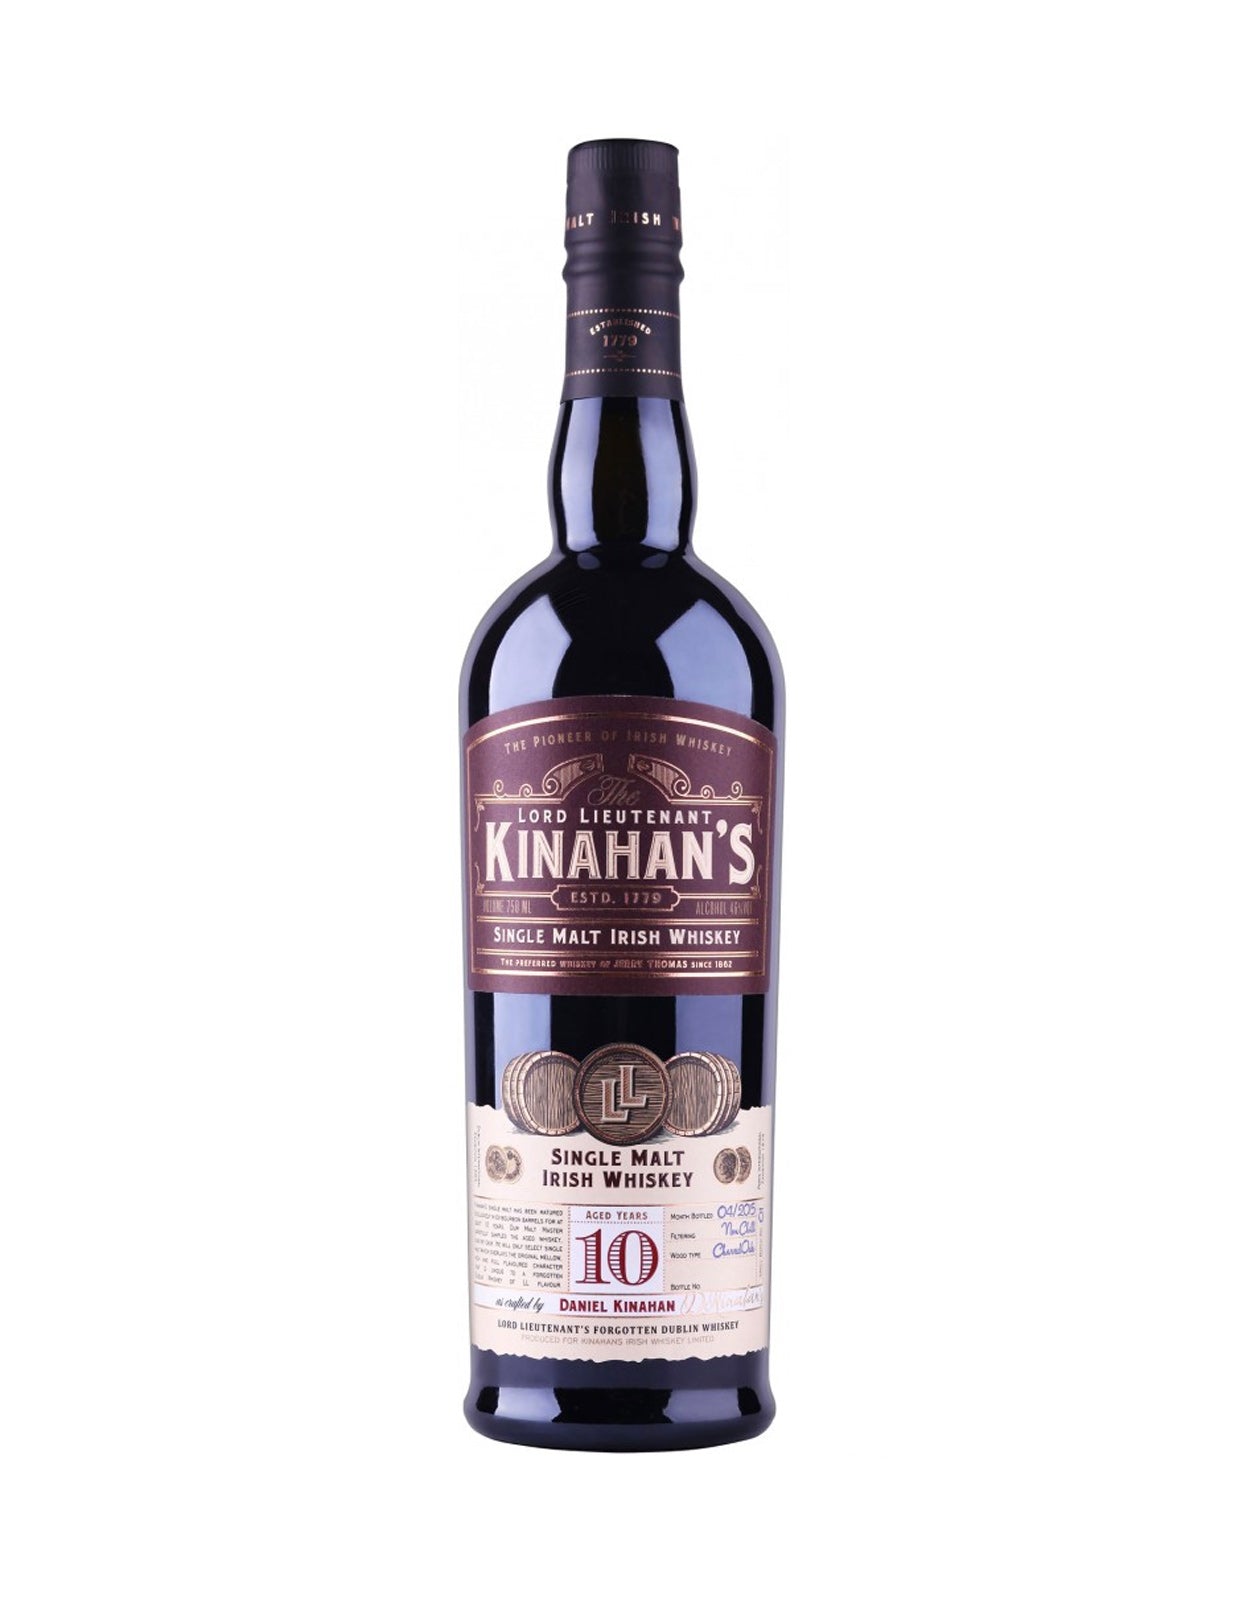 Kinahan's Single Malt Irish Whiskey